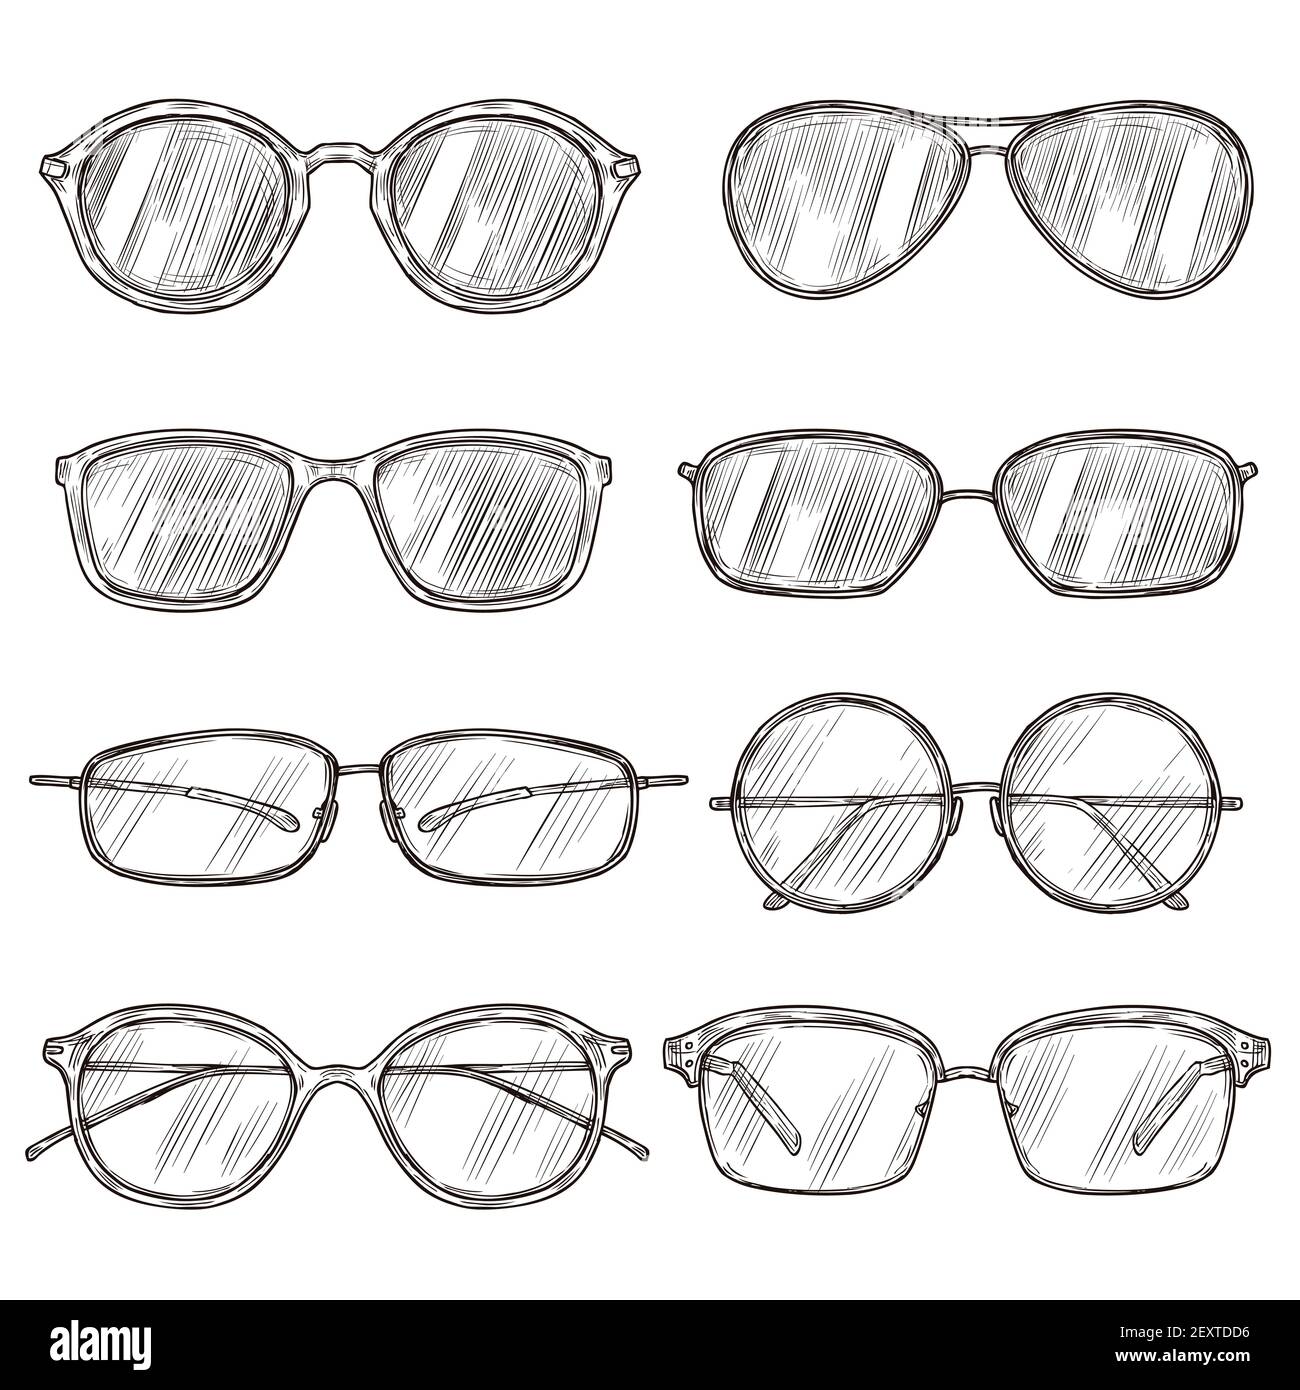 Disegna gli occhiali da sole. Montature di occhiali disegnate a mano,  occhielli da doodle. Calici maschili e femminili isolati vettore di moda  vintage set. Disegno di occhiali da sole e occhiali da